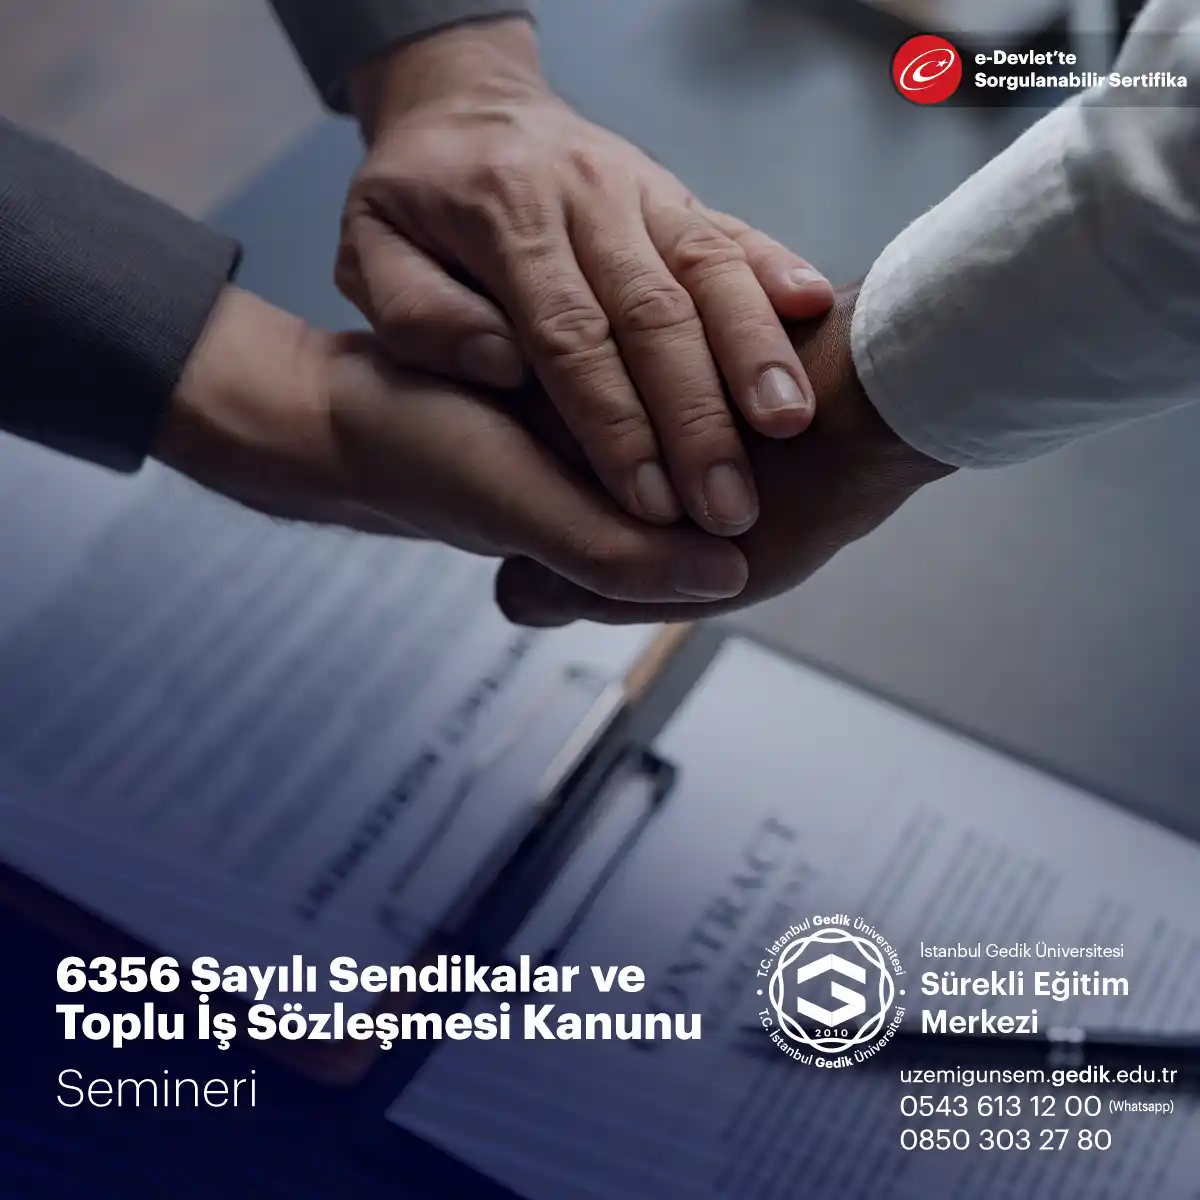 6356 Sayılı Sendikalar ve Toplu İş Sözleşmesi Kanunu, Türkiye'de sendikaların kuruluşunu, faaliyetlerini ve toplu iş sözleşmelerini düzenleyen bir yasadır.